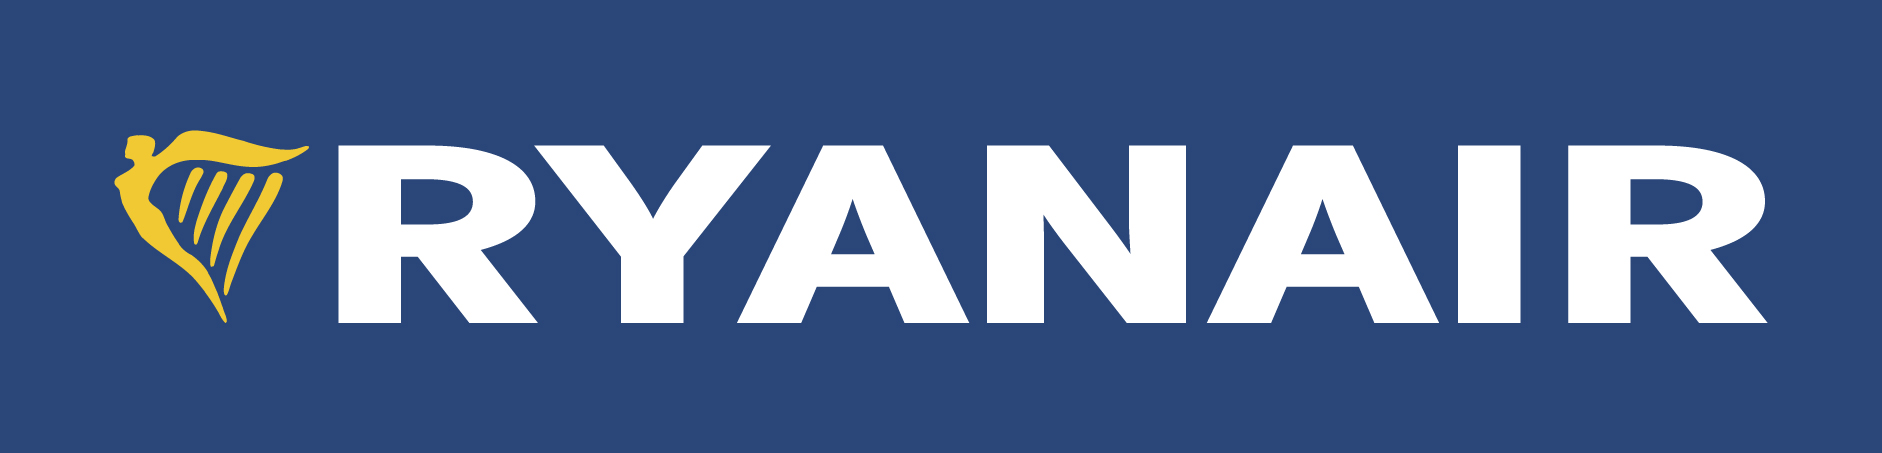 ryanair logo.jpg